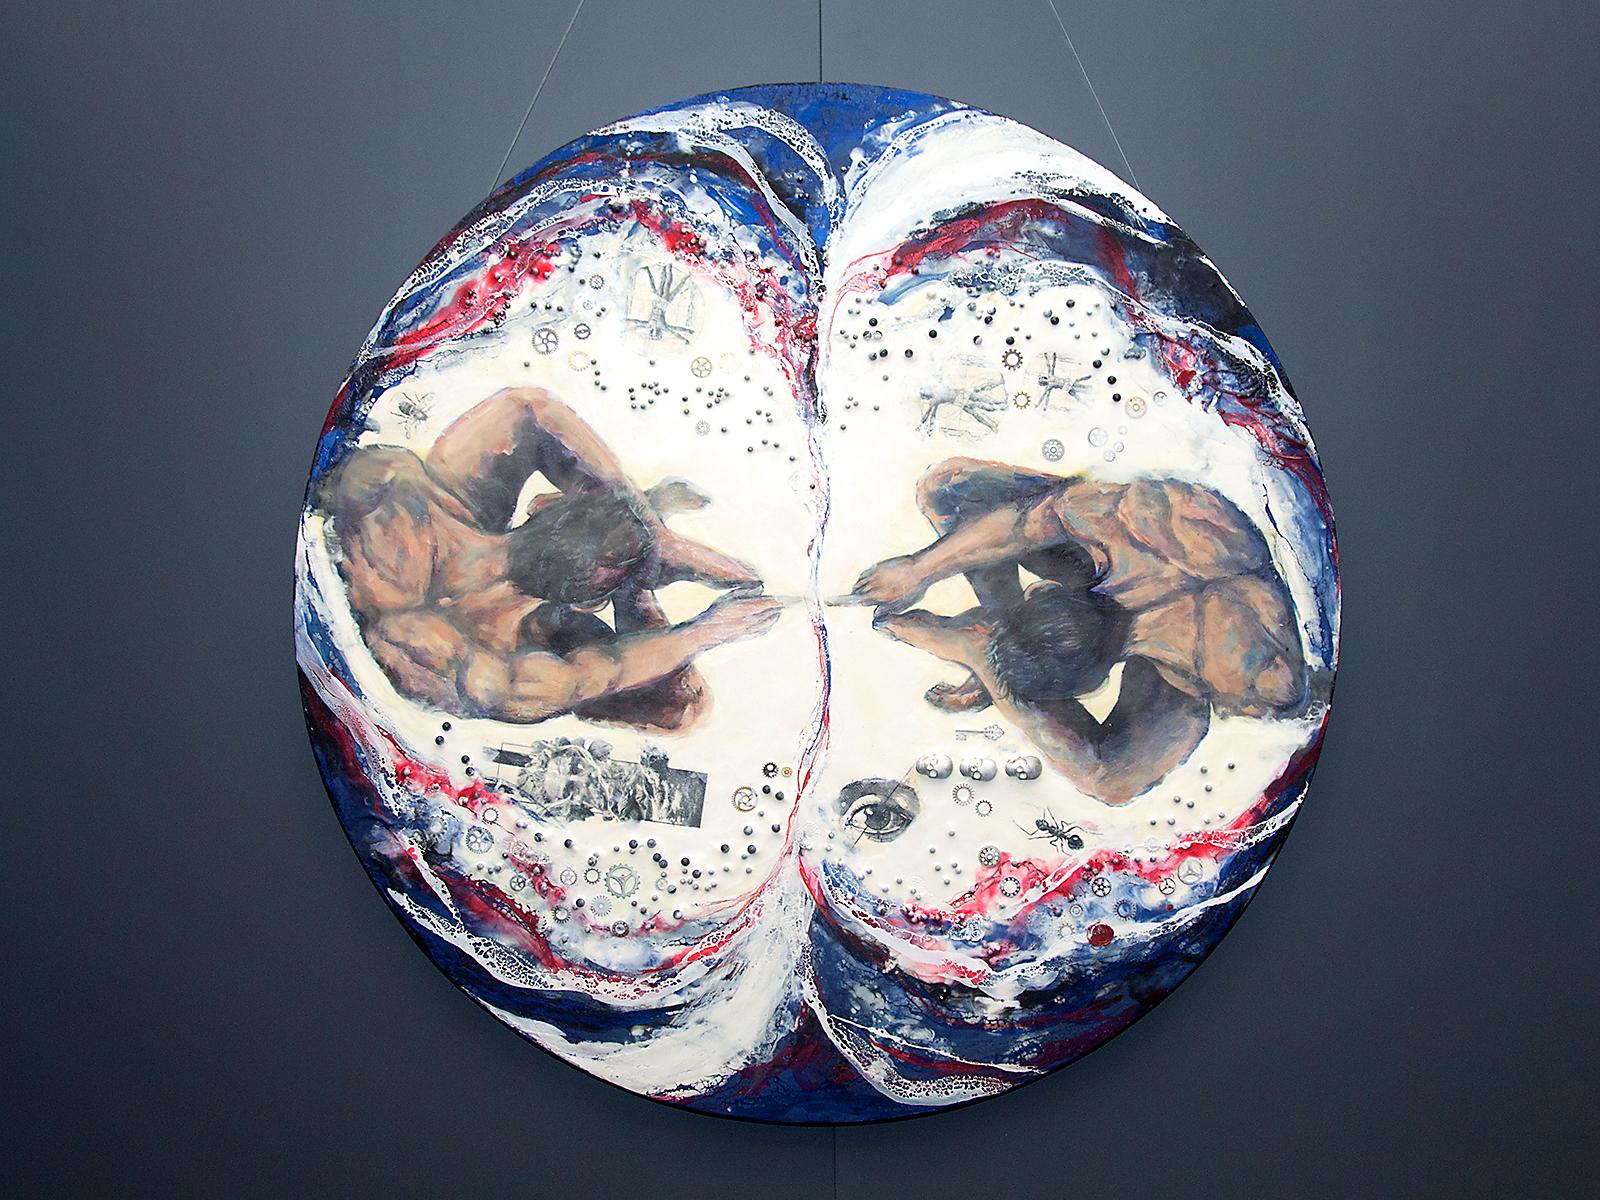 $!Banpaís inaugura exposición de pintura “Biaxial” de Pamela Letona